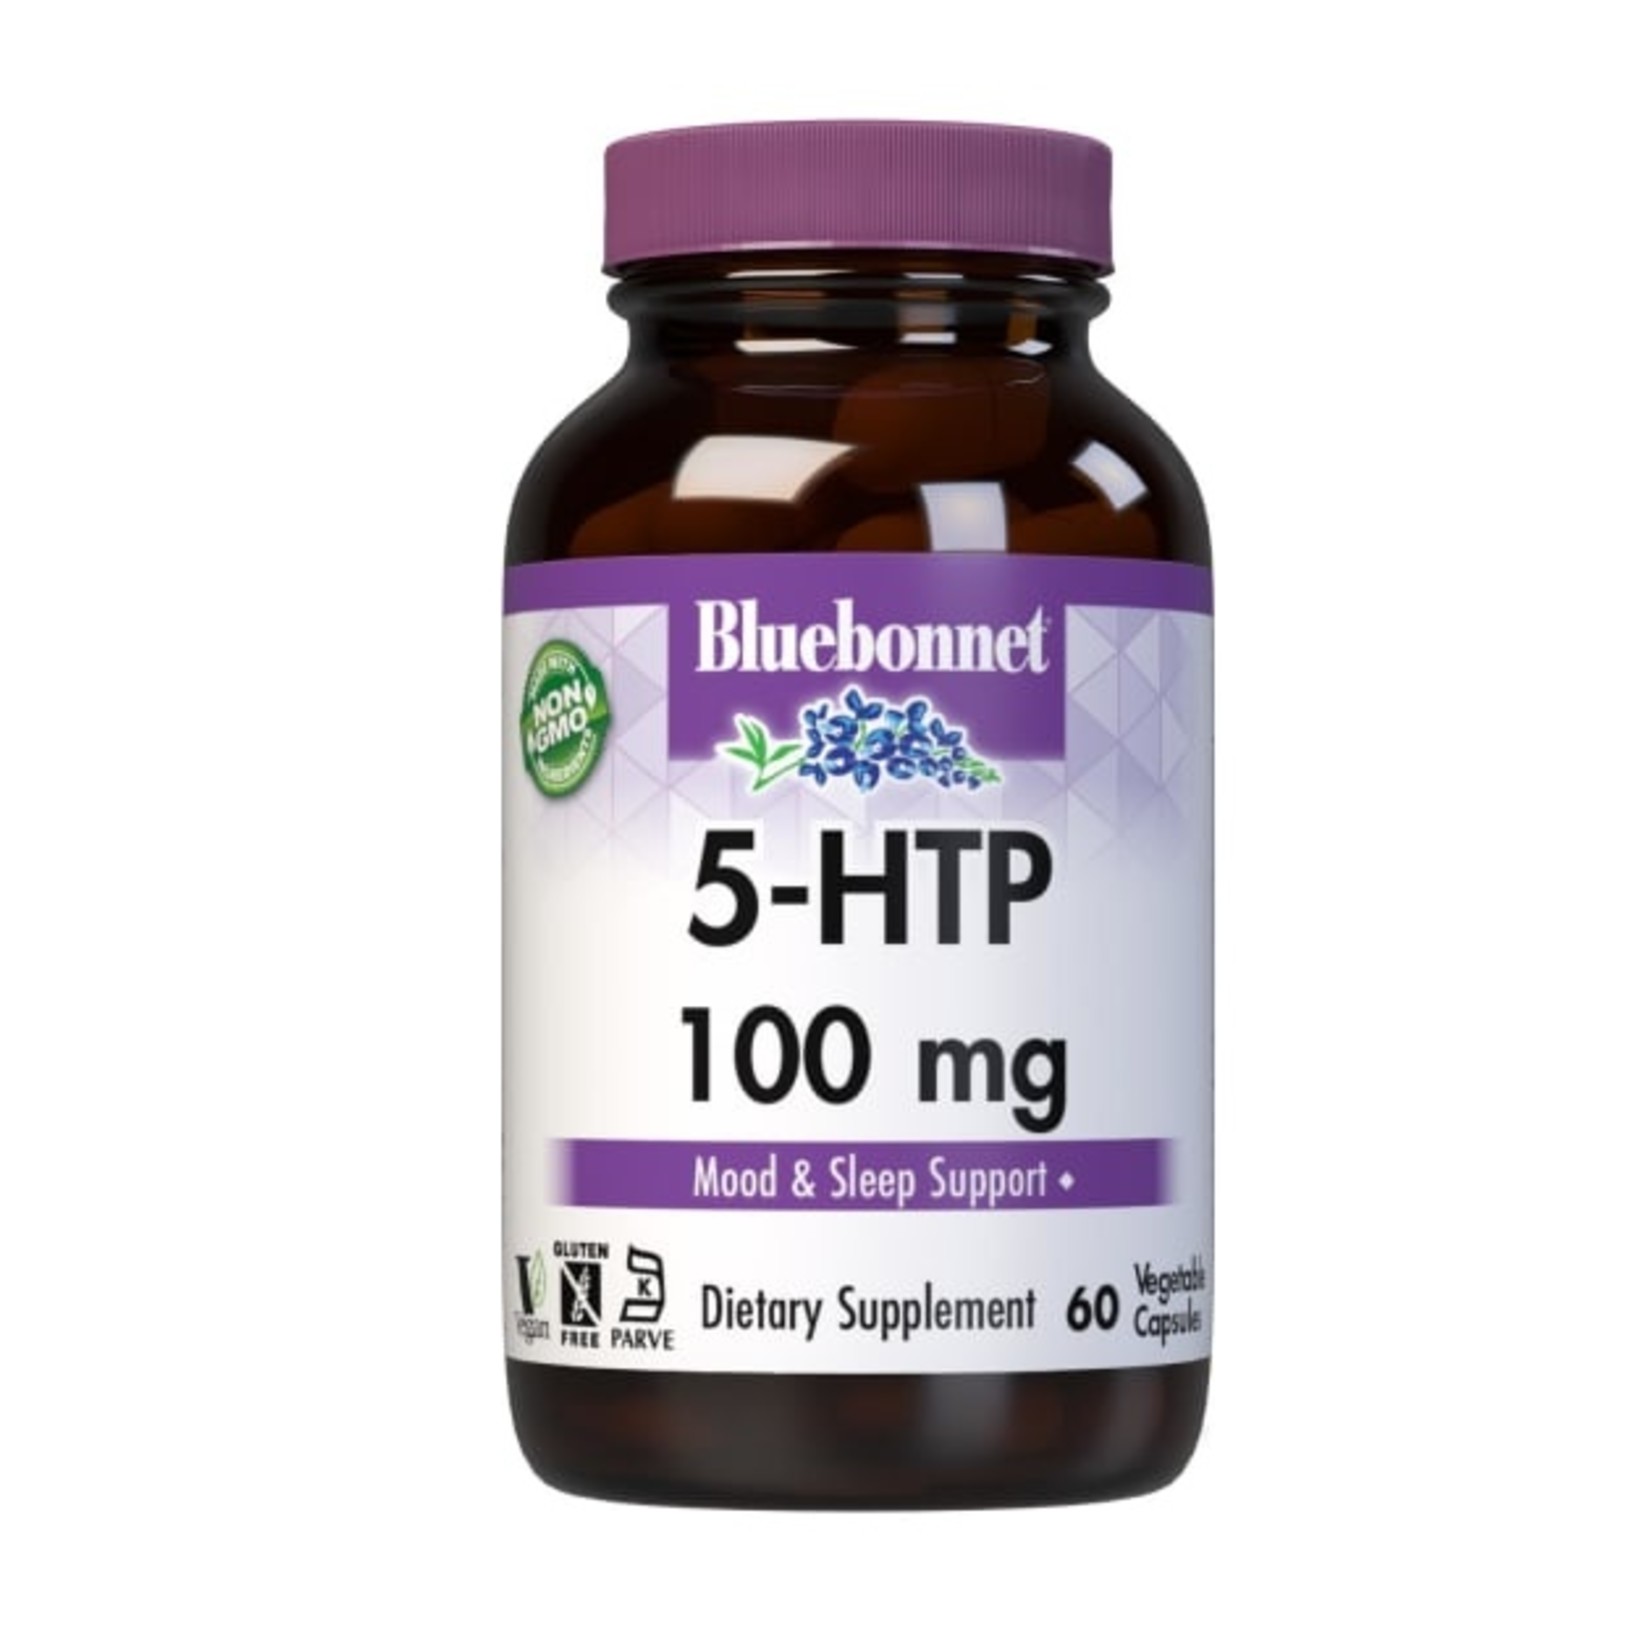 Bluebonnet Bluebonnet - 5-Htp 100 mg - 60 Capsules